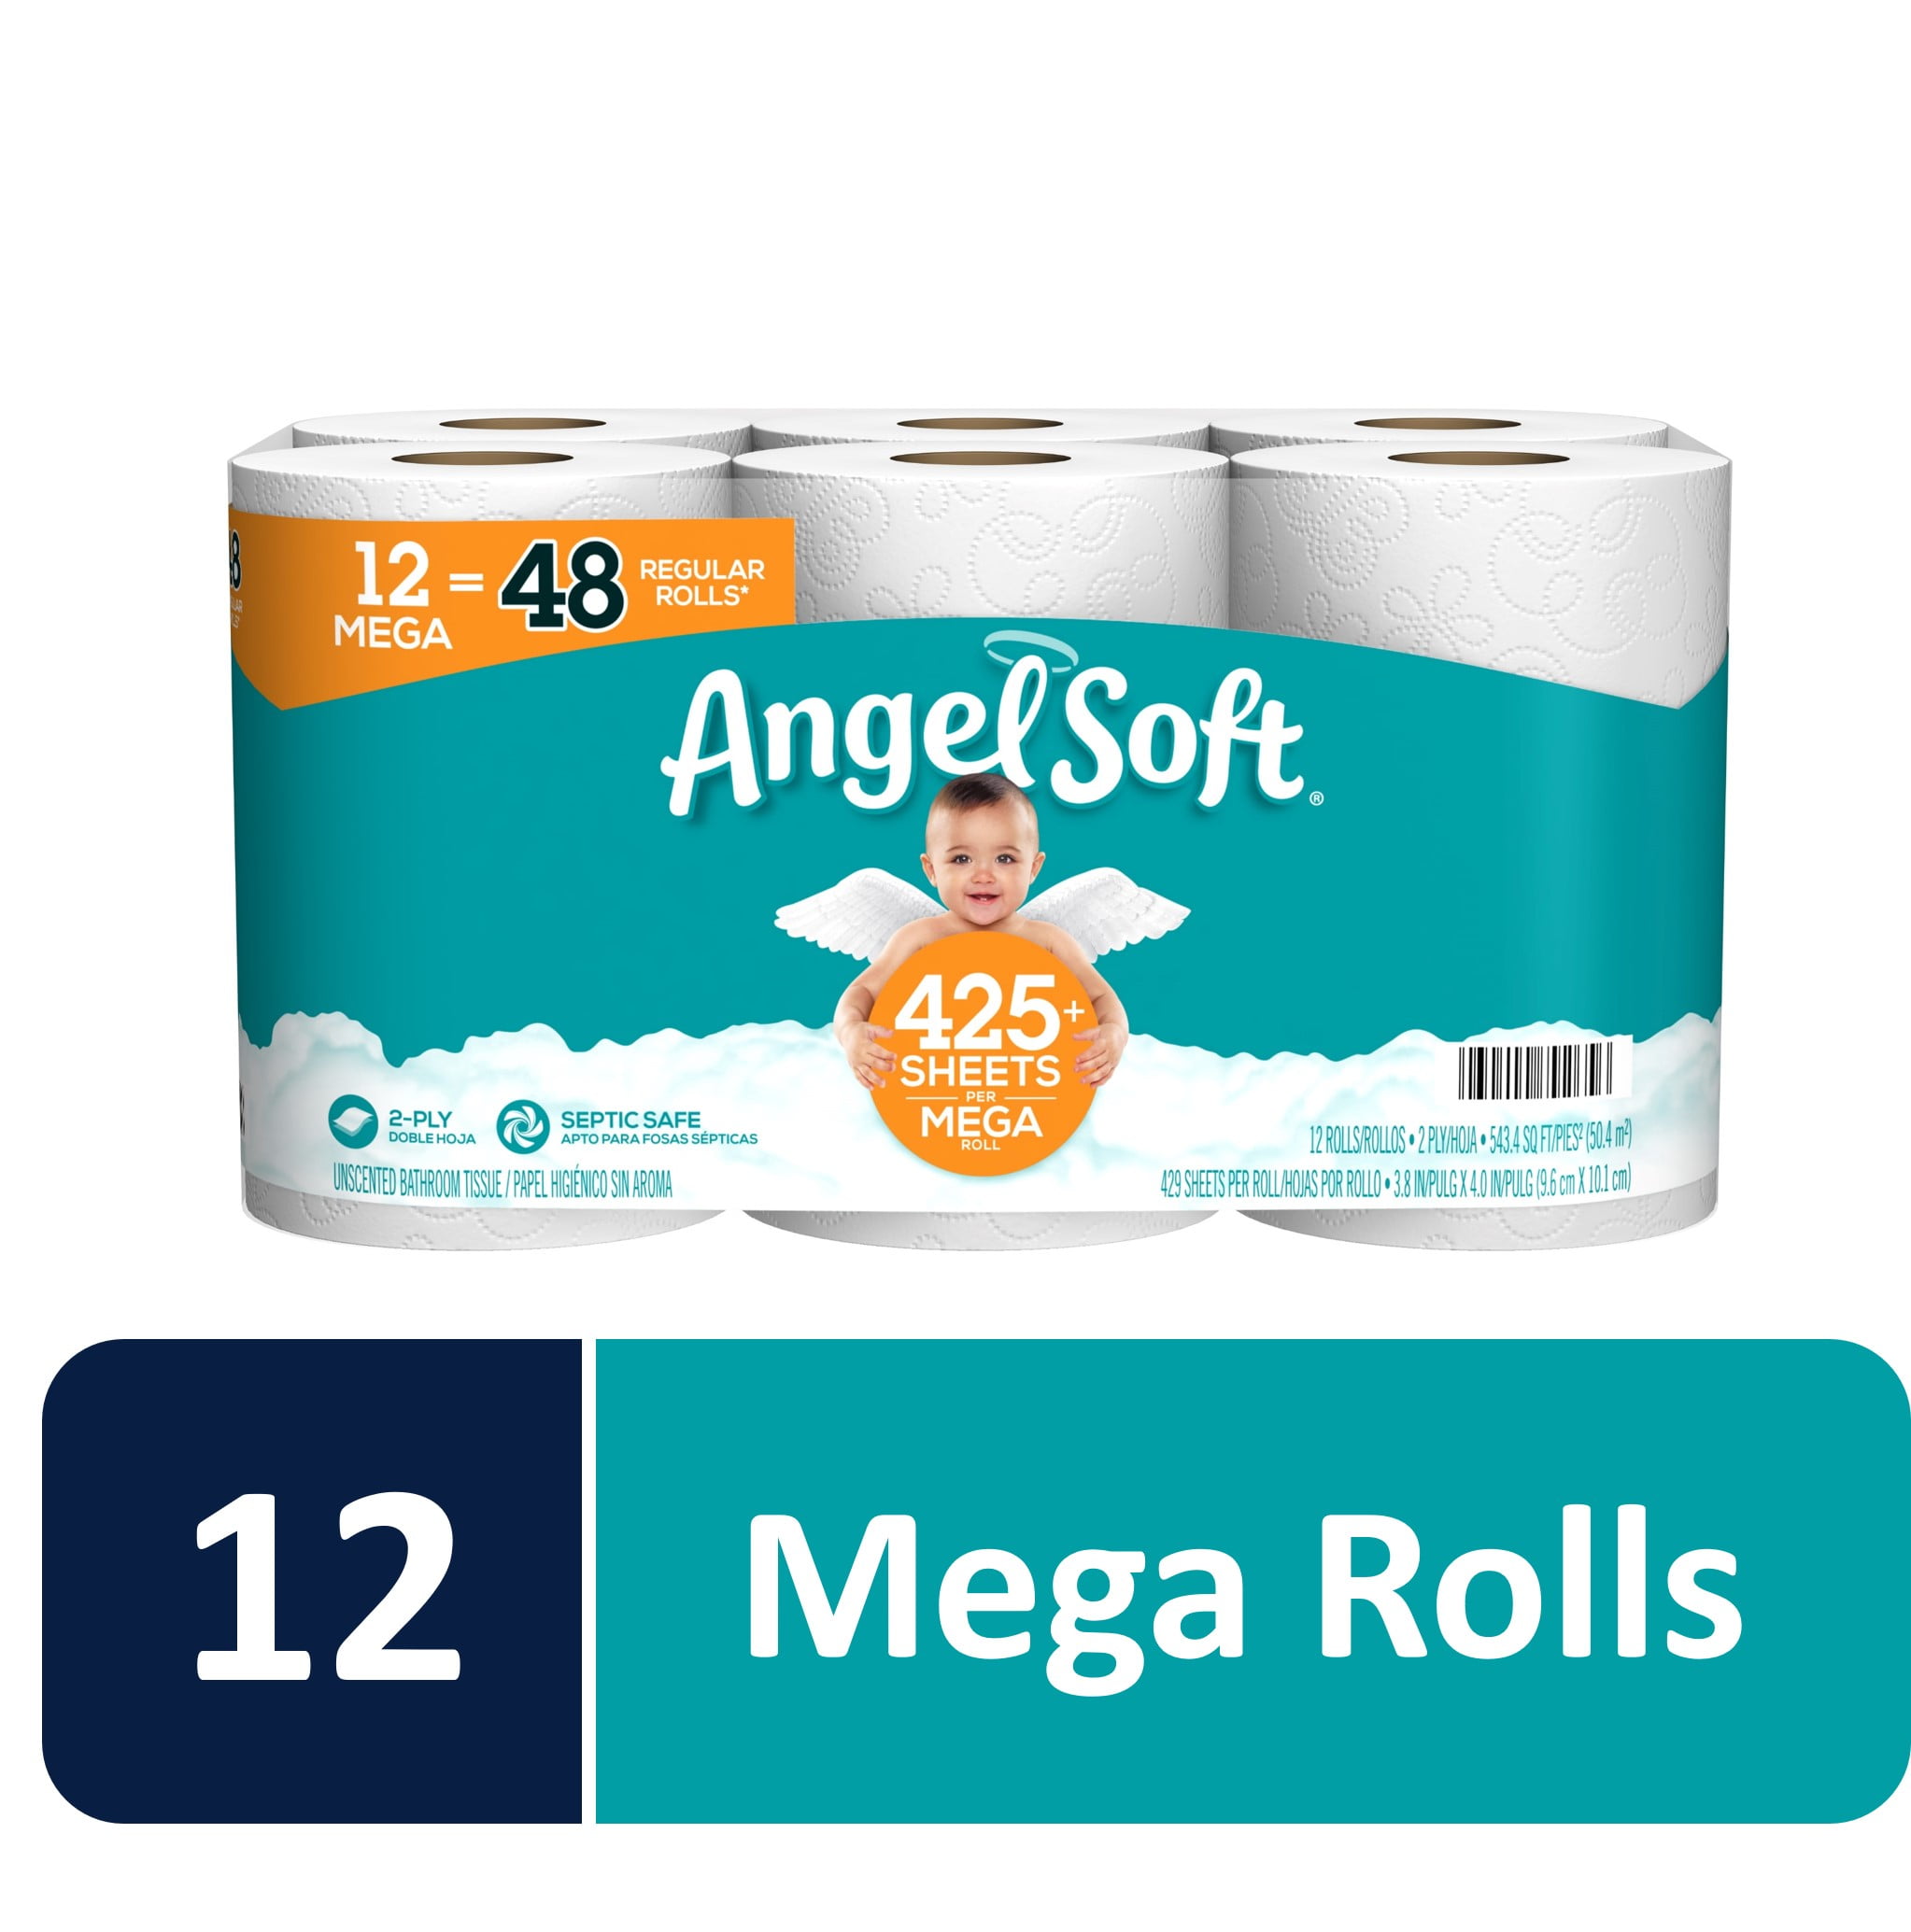 Angel Soft 791565 12 Mega Rolls Toilet Paper for sale online